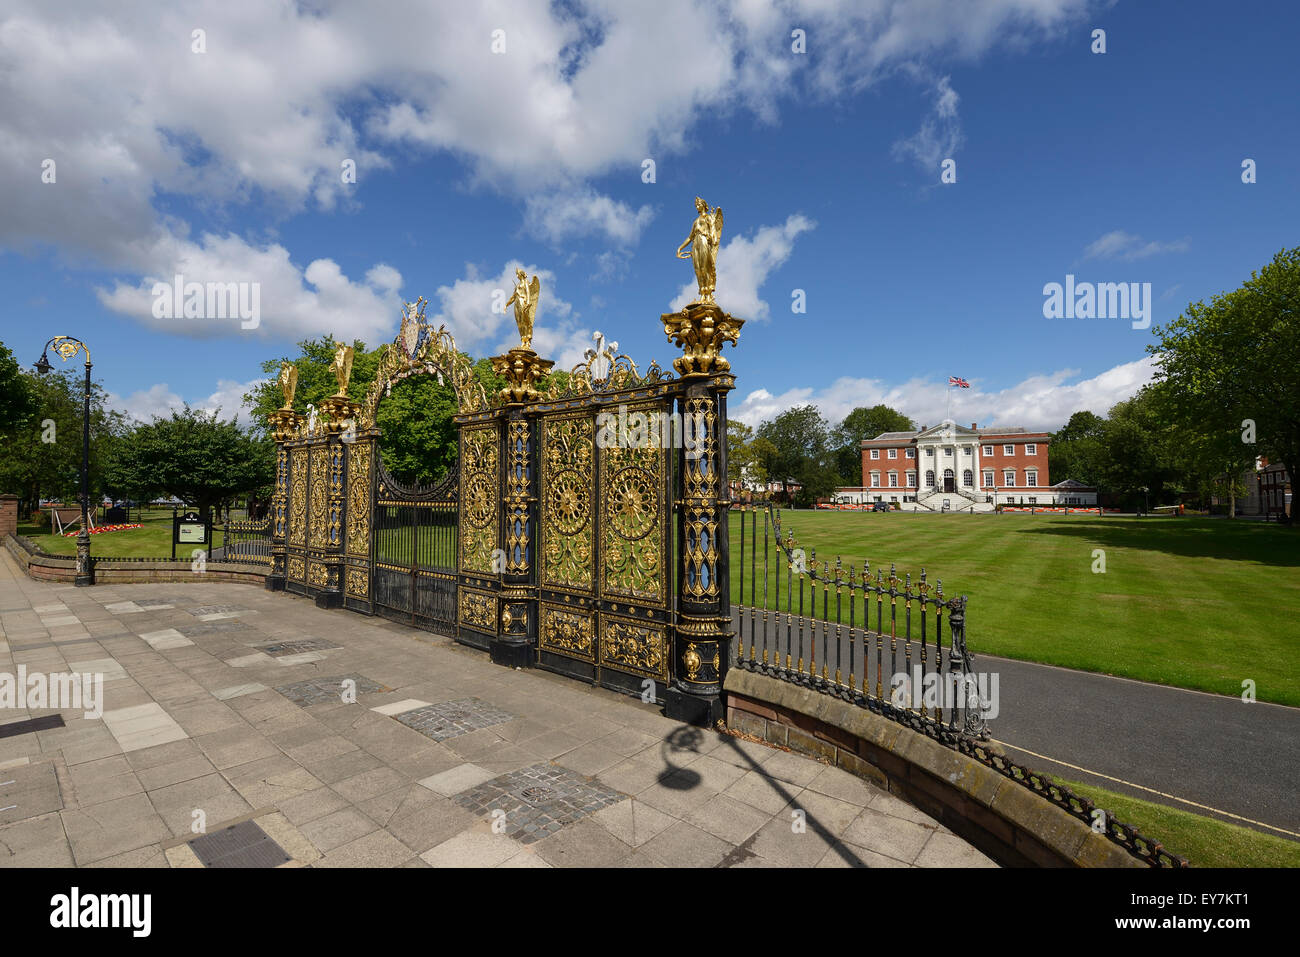 El Golden Gates fuera del Ayuntamiento Warrington Cheshire UK Foto de stock